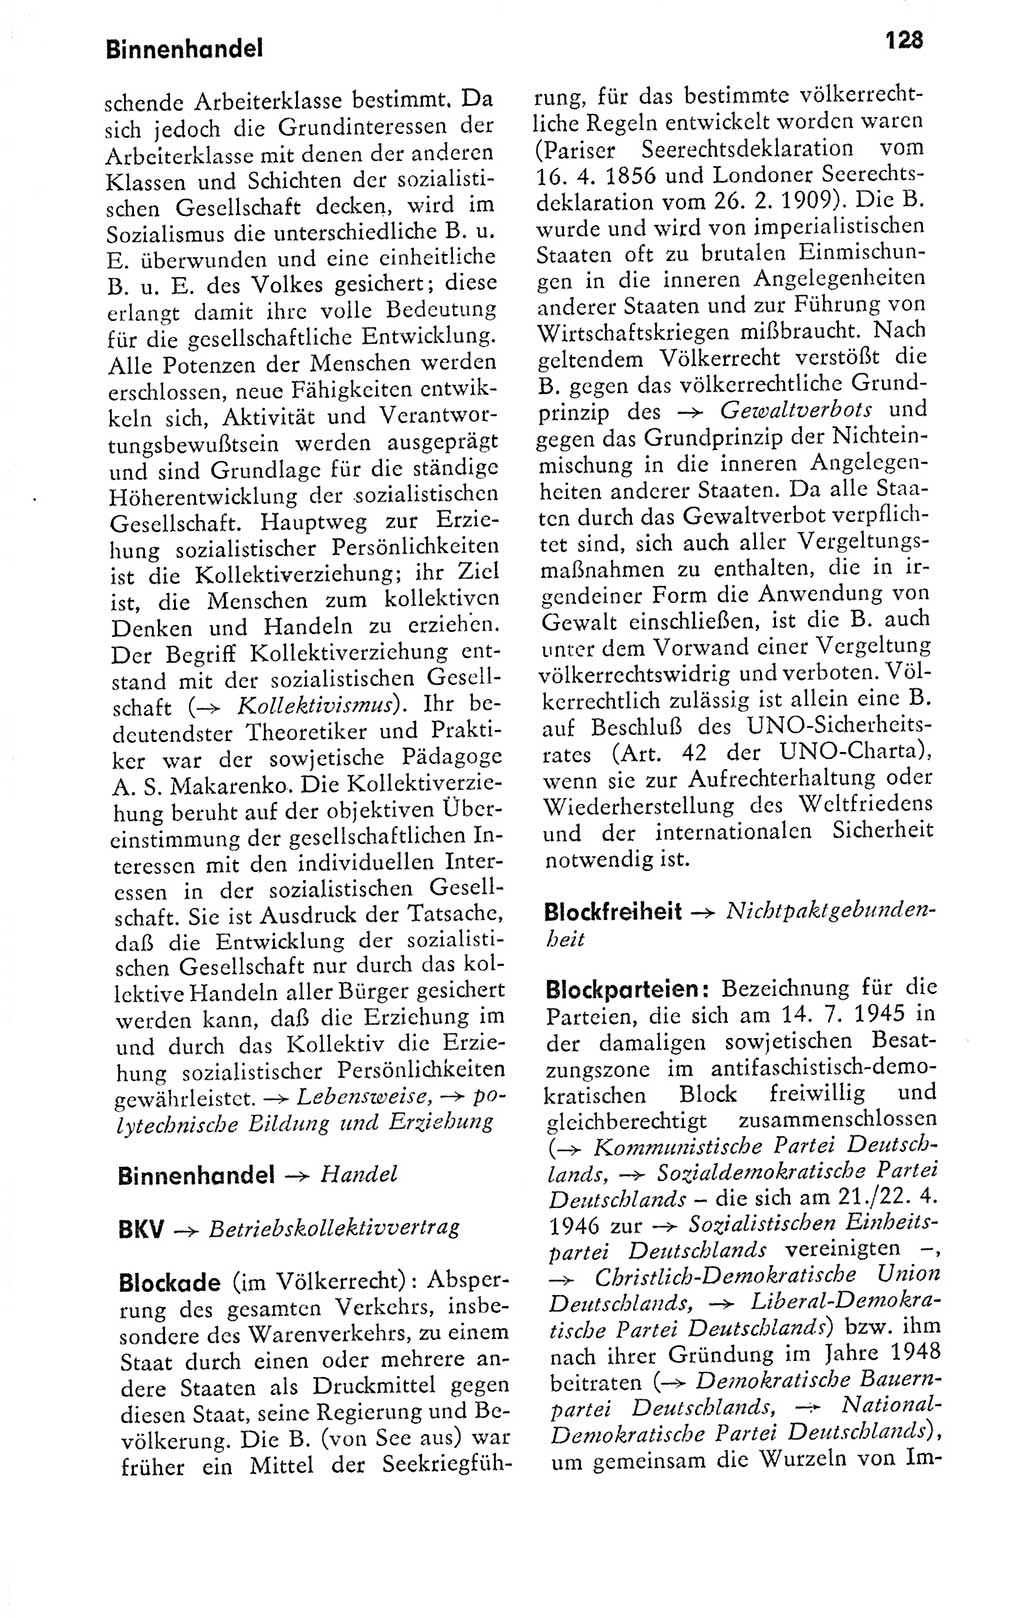 Kleines politisches Wörterbuch [Deutsche Demokratische Republik (DDR)] 1978, Seite 128 (Kl. pol. Wb. DDR 1978, S. 128)